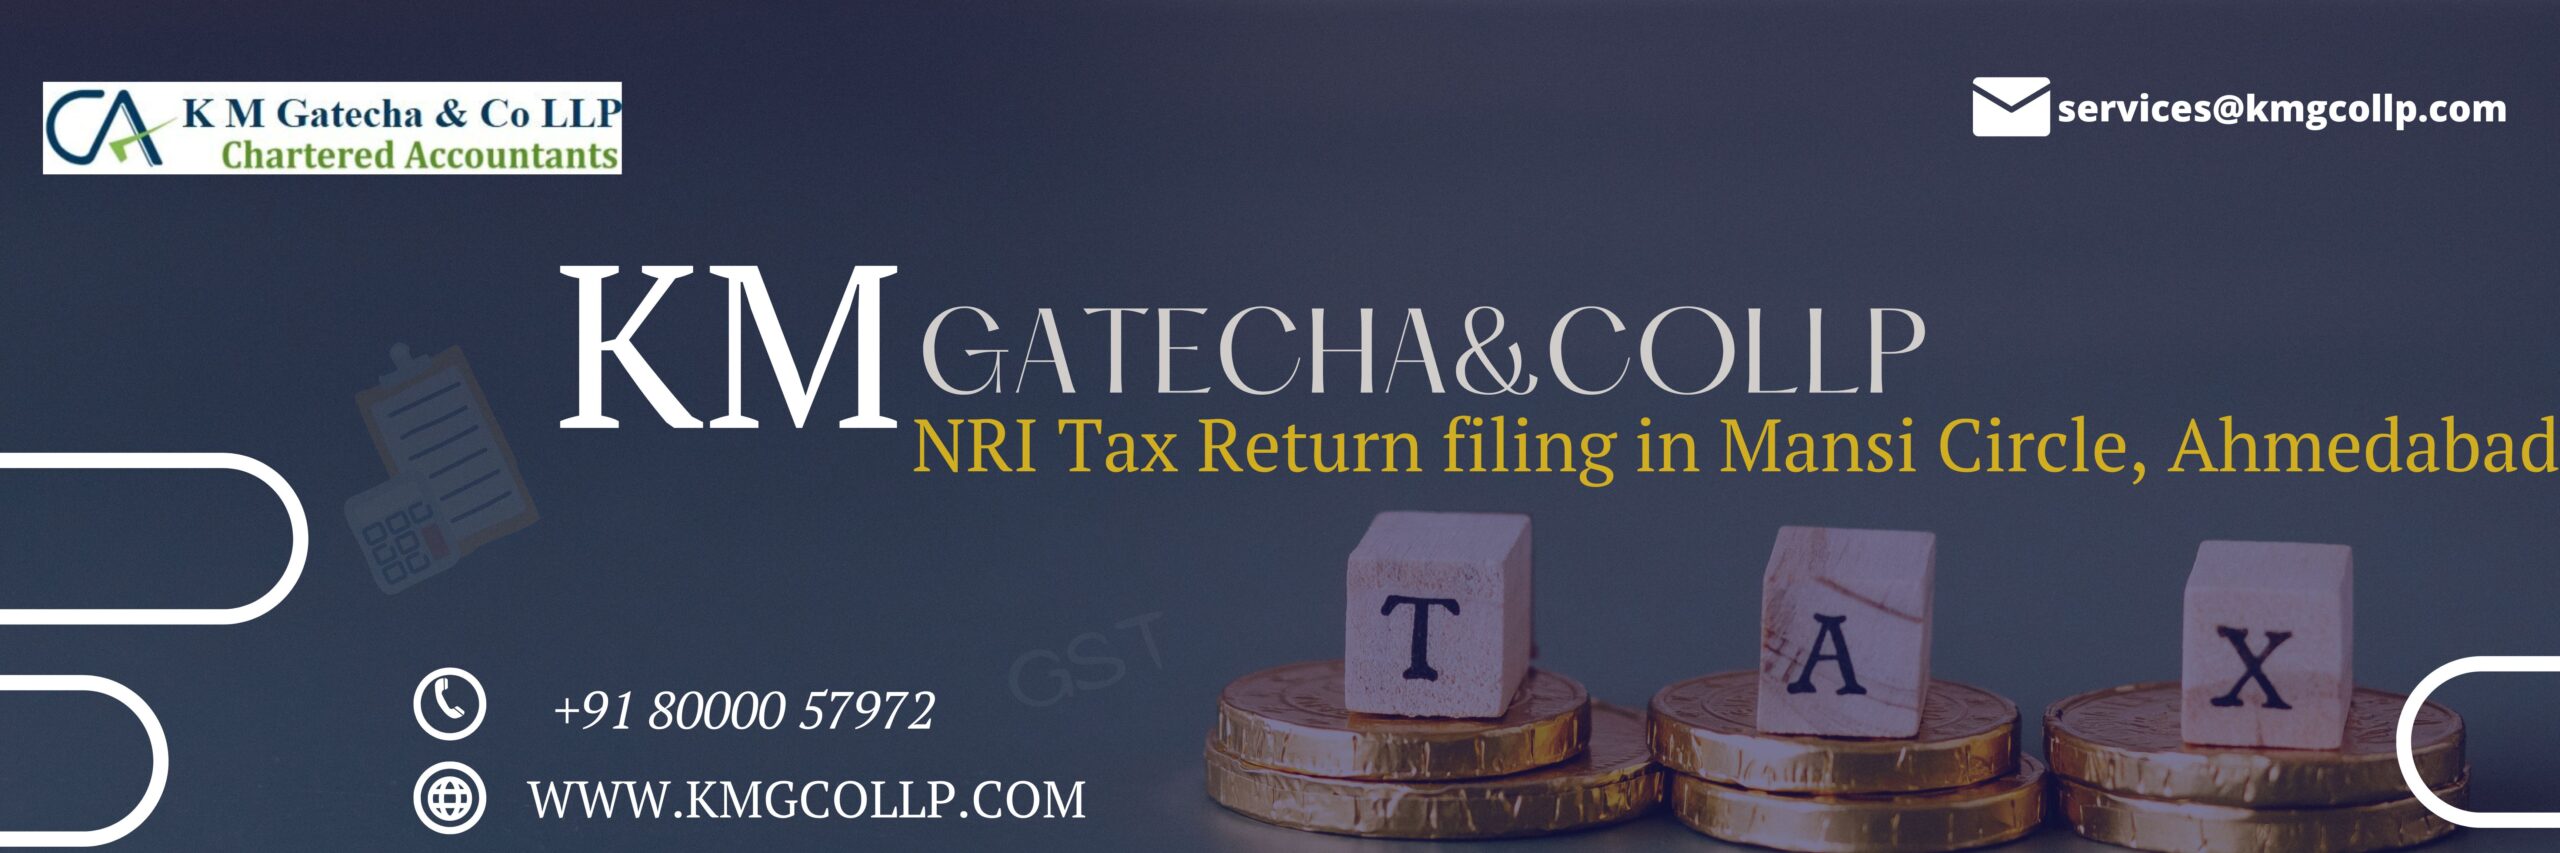 NRI Tax Return filing in Mansi Circle, Ahmedabad